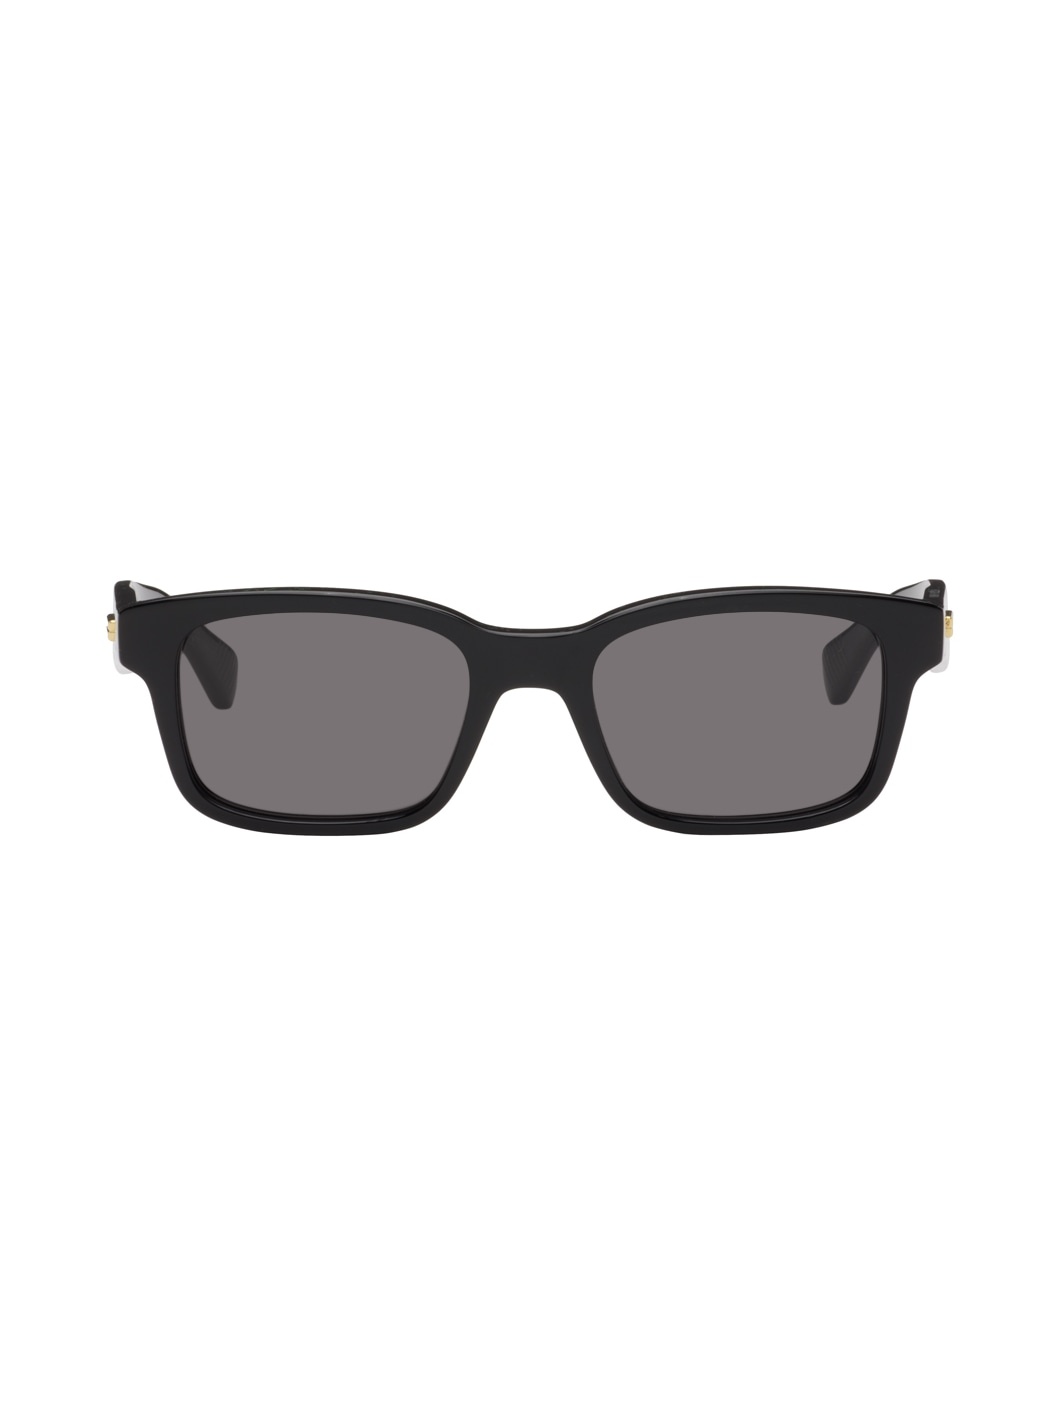 Black Classic Square Sunglasses - 1